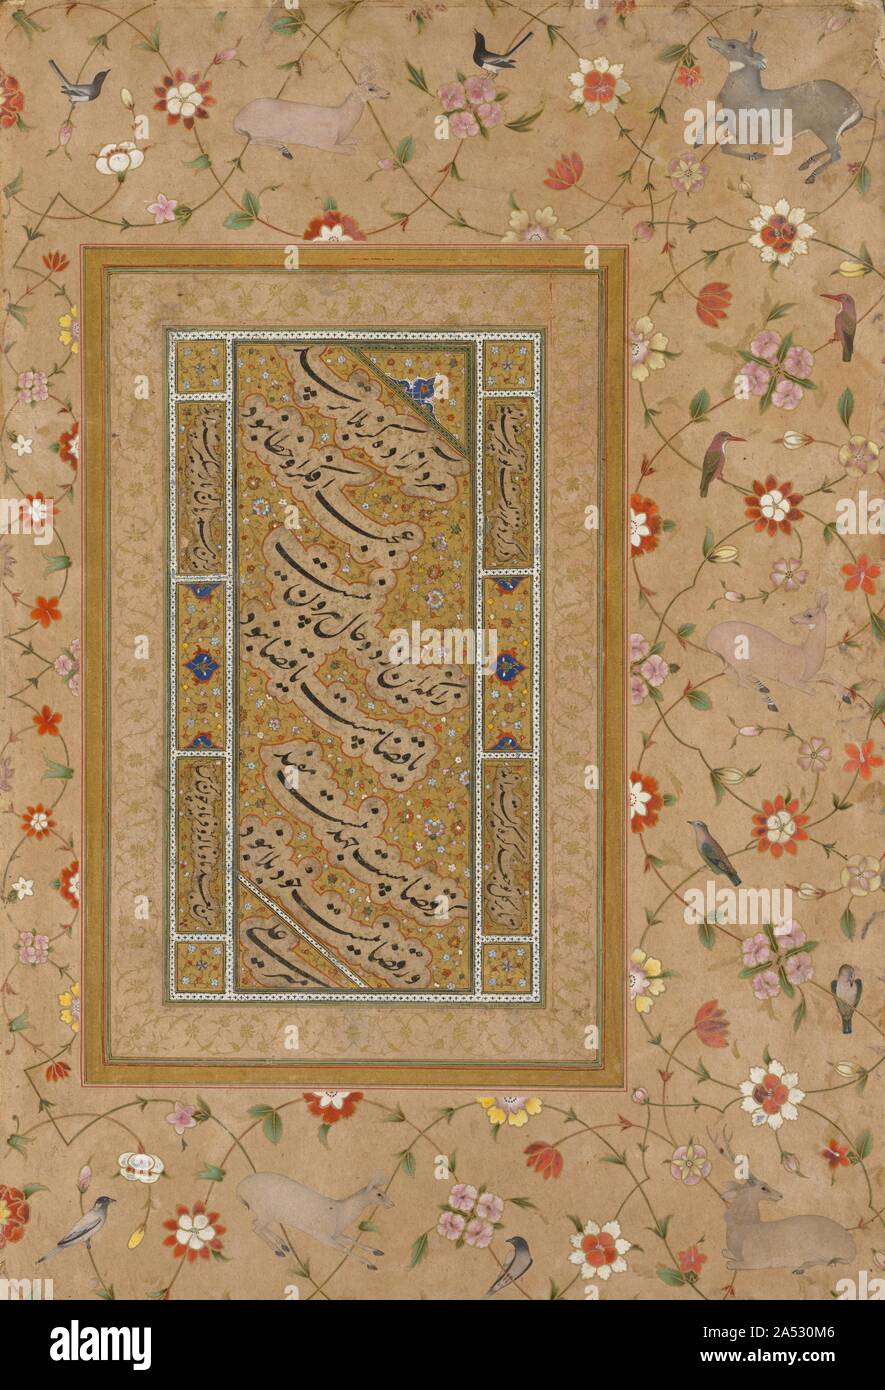 Pagina dal tardo Shah Jahan Album: persiano di calligrafia incorniciato da una cornice ornamentale di fiori e uccelli, c. 1500 a 1540. Le opere del celebre calligrafo Mir Ali erano favorite per l'inclusione nel tardo Shah Jahan Album, probabilmente a causa dei suoi collegamenti per la dinastia fondata dal padre Mughals Timur (1336- 1405). Questa pagina di calligrafia era più di cento anni di età quando è stato impostato nell'album imperiale e dato un confine squisitamente resi con scorrimento vitigni floreali recanti gli uccelli e cervi. La preminenza della calligrafia e poesia in album di Mughal è una indicazione di come questi Turk Foto Stock